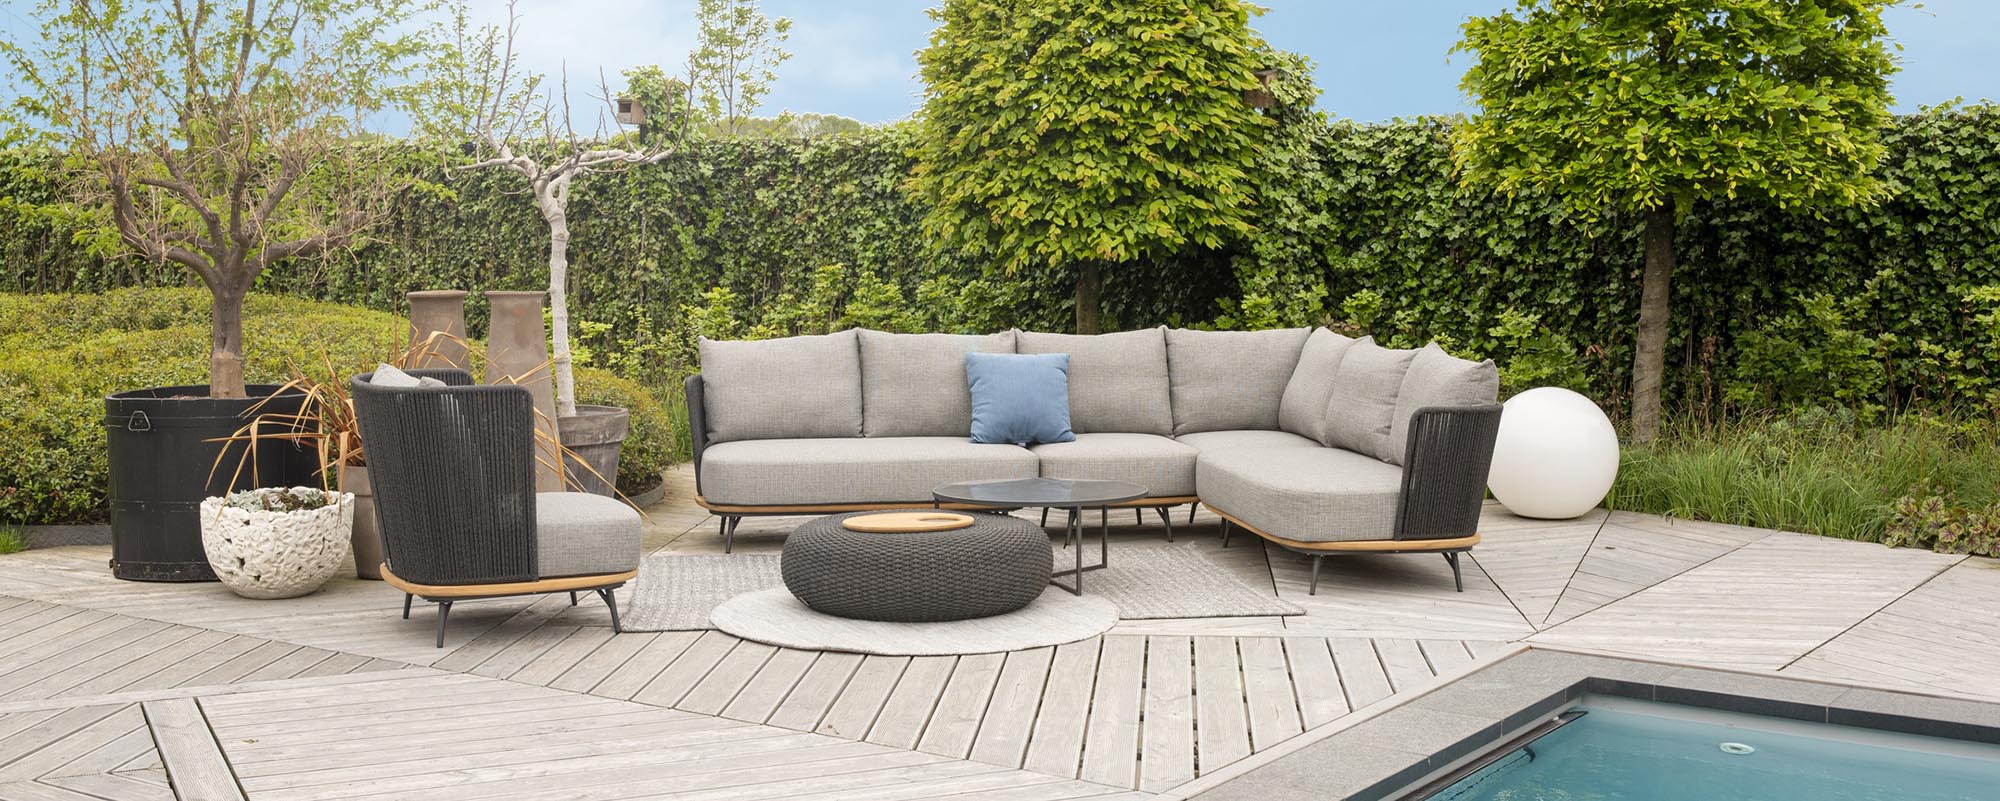 Gartenmöbel | Positano Lounge Sofa-Module Garten Superschöne Lounge